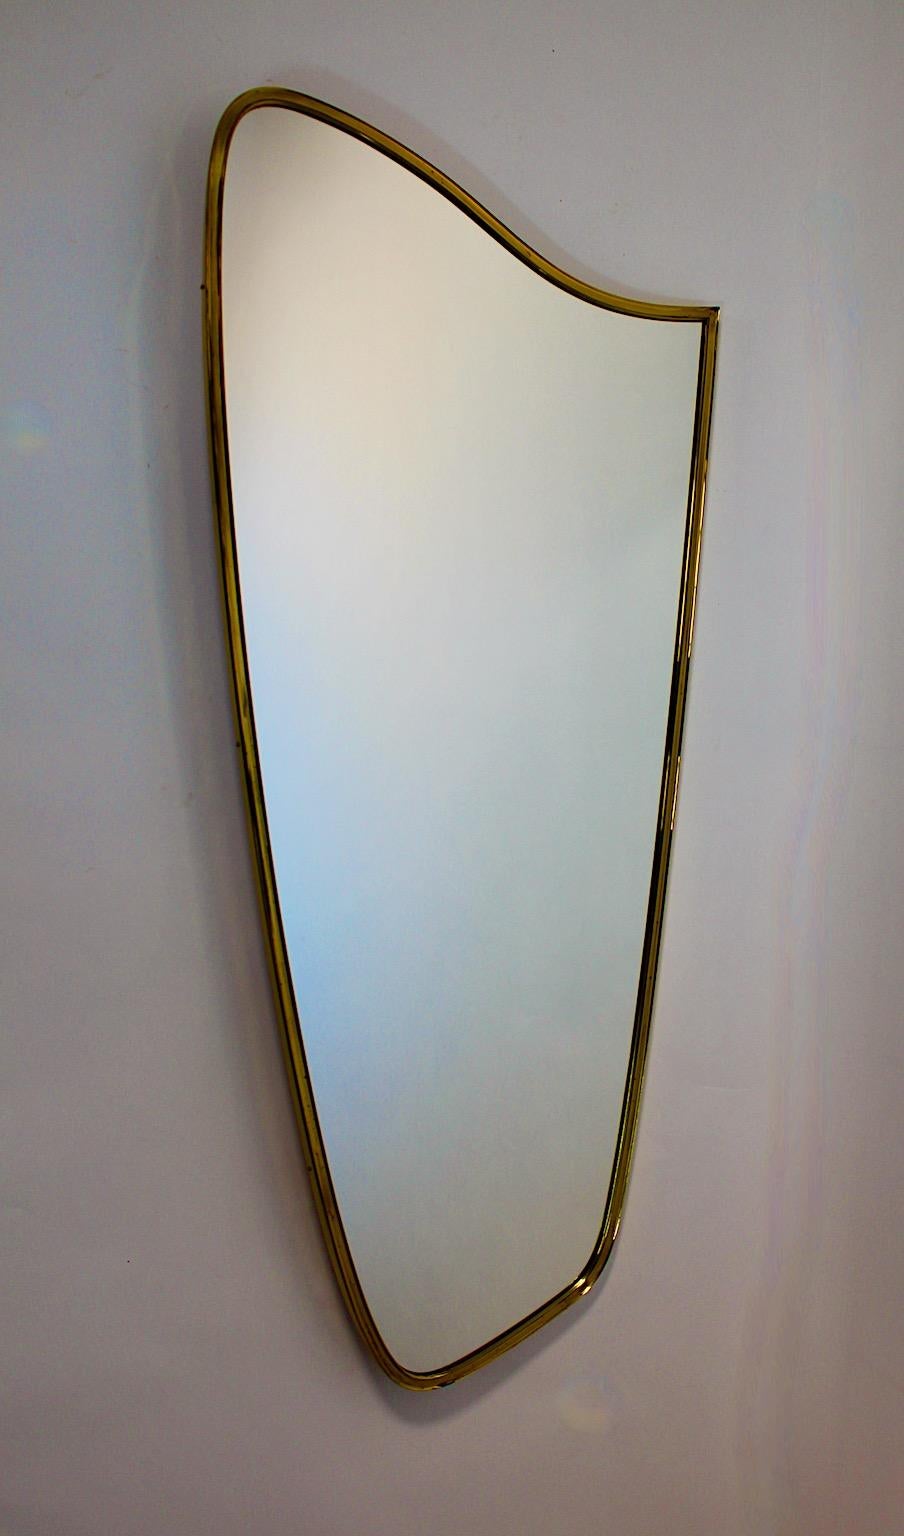 Mid Century Modern Vintage Bodenspiegel oder voller Länge Spiegel aus Messing und Spiegel 1950er Jahre Italien.
Ein atemberaubender Bodenspiegel in schöner Form mit einem großen Format, das es erlaubt, ihn in einem Eingangsbereich oder über einem